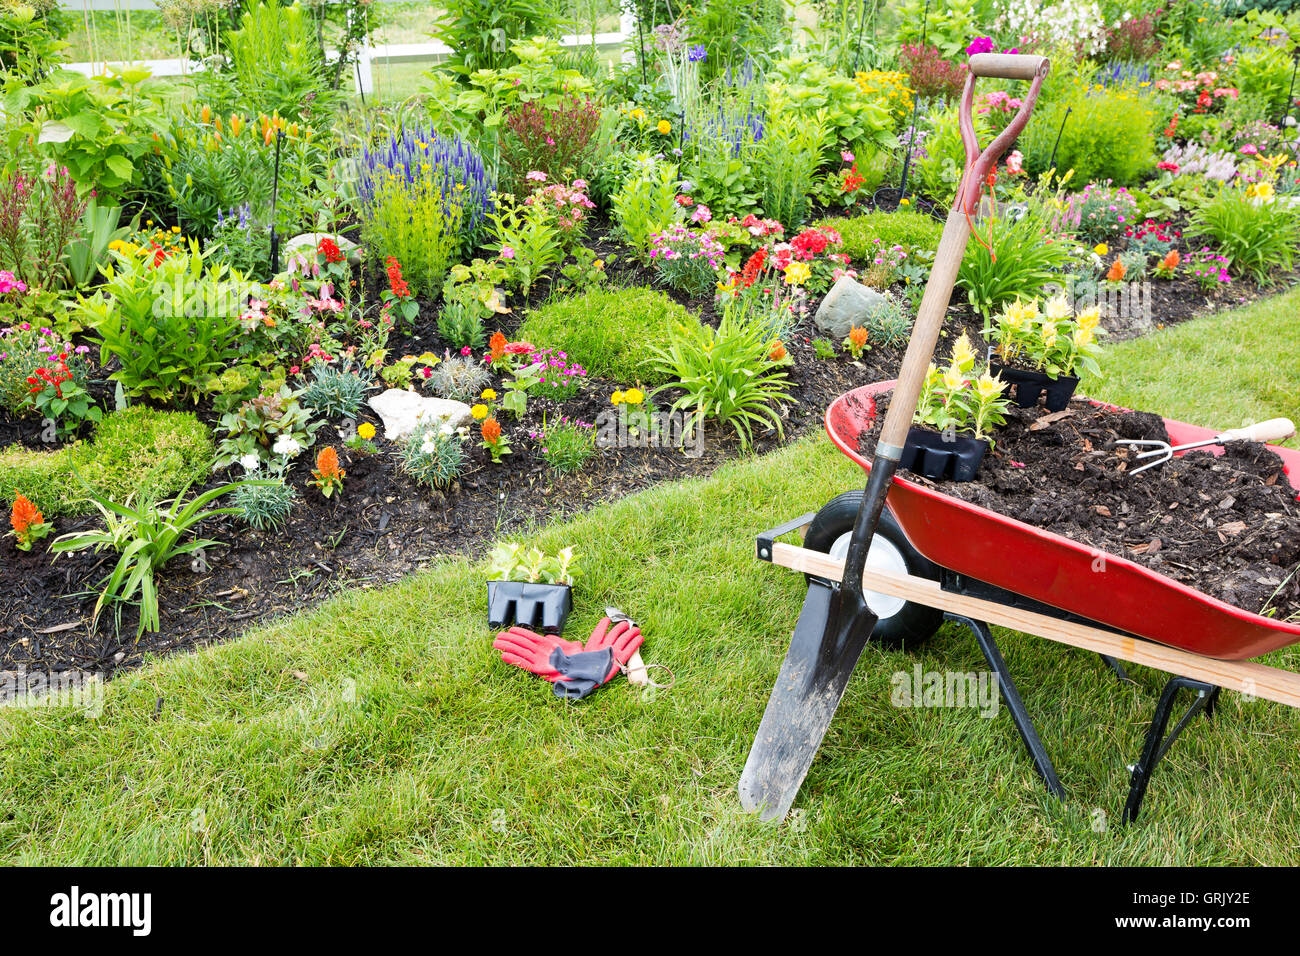 Gartengeräte bereit für den Einsatz in einem Garten mit schönen Pflanzen und Blumen Stockfoto